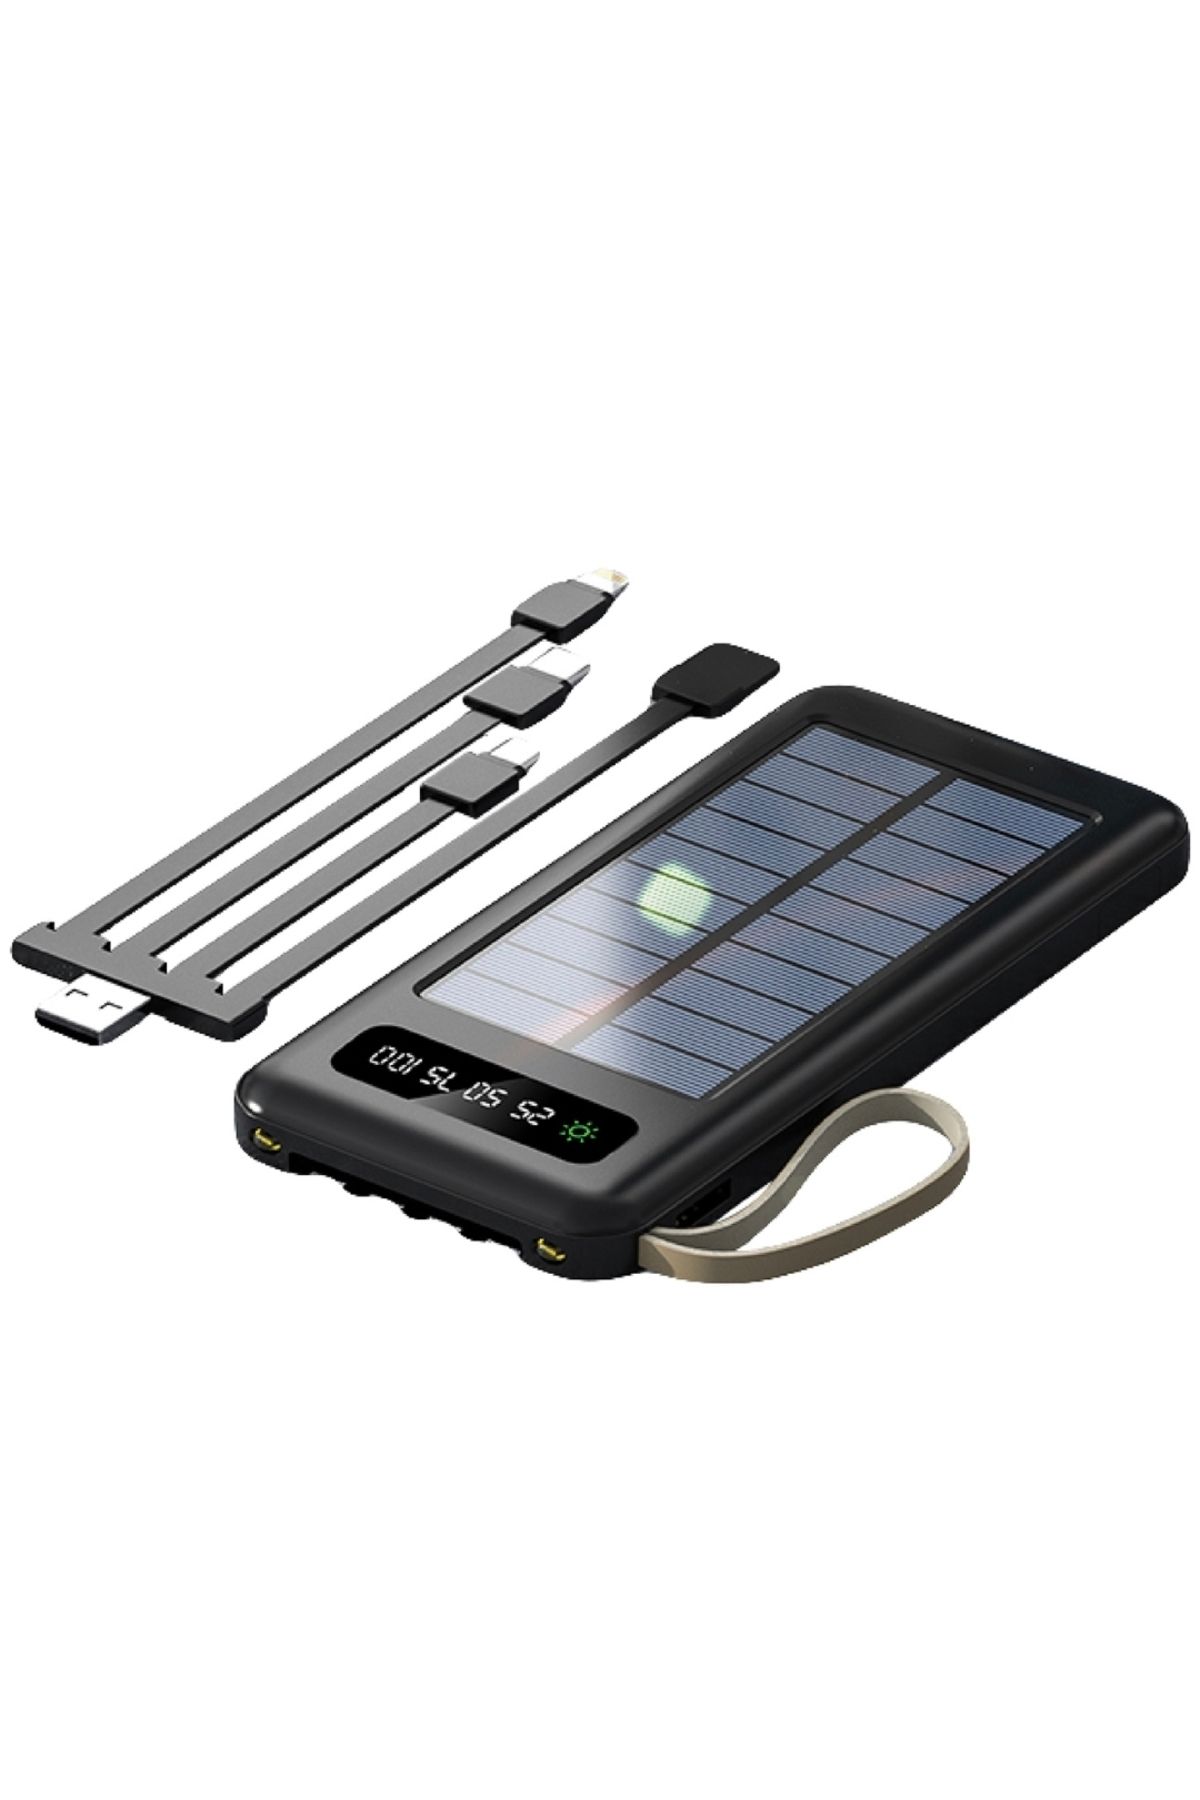 Syrox Sunıx Pb-43 12.000 Mah Güneş Enerjili Solar Powerbank 4lü Kablolu Type-c Ve Iphone Tüm Telefonlara